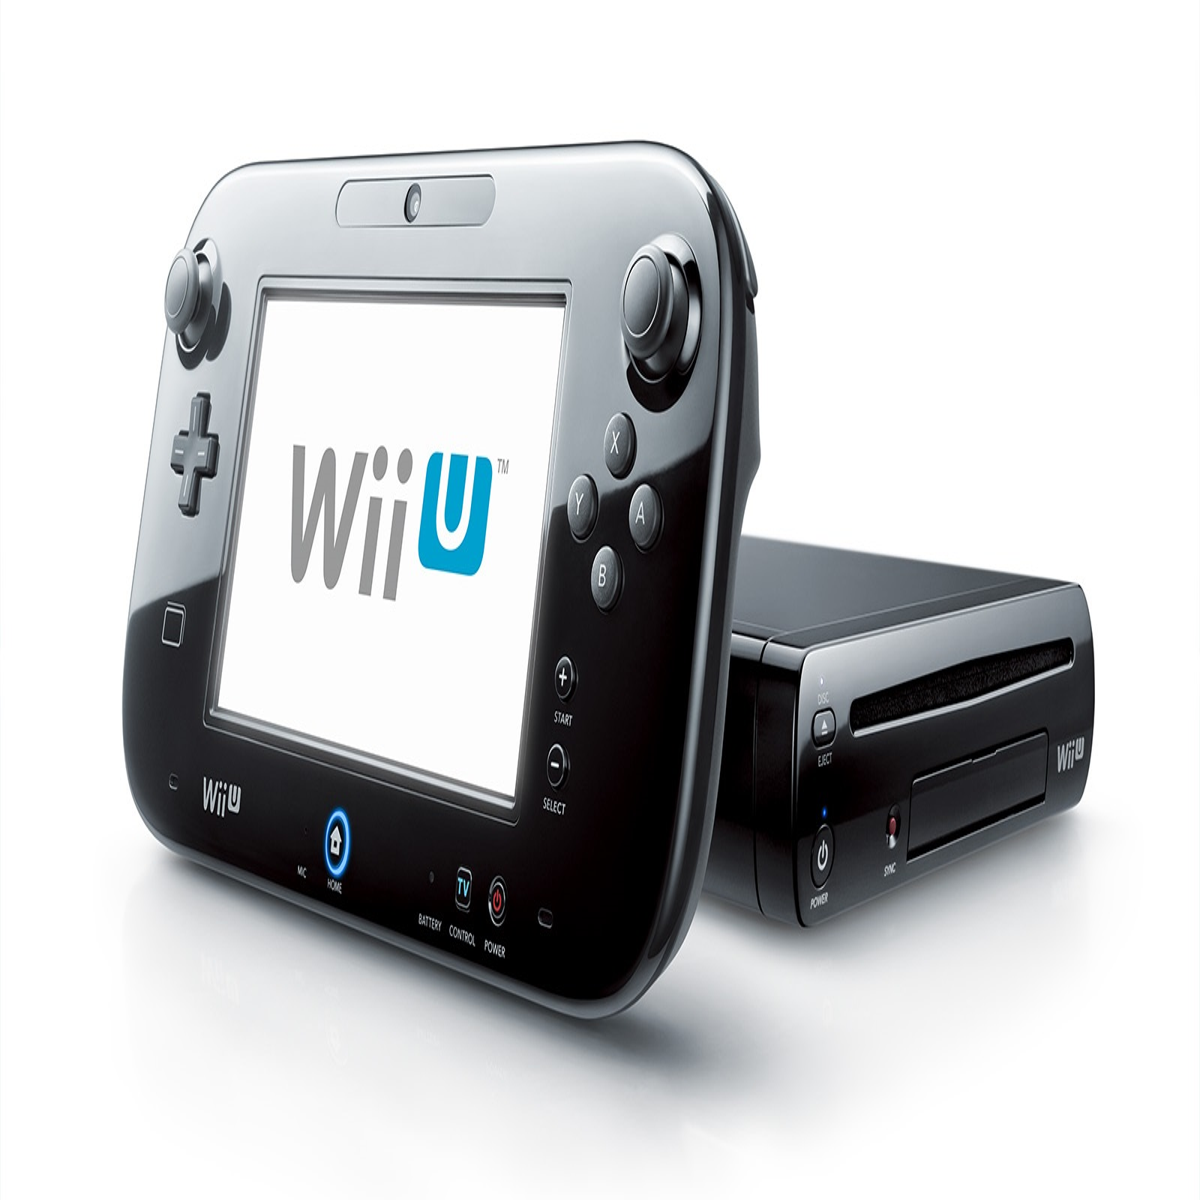 Best Buy: The Legend of Zelda: A Link to the Past Nintendo Wii U